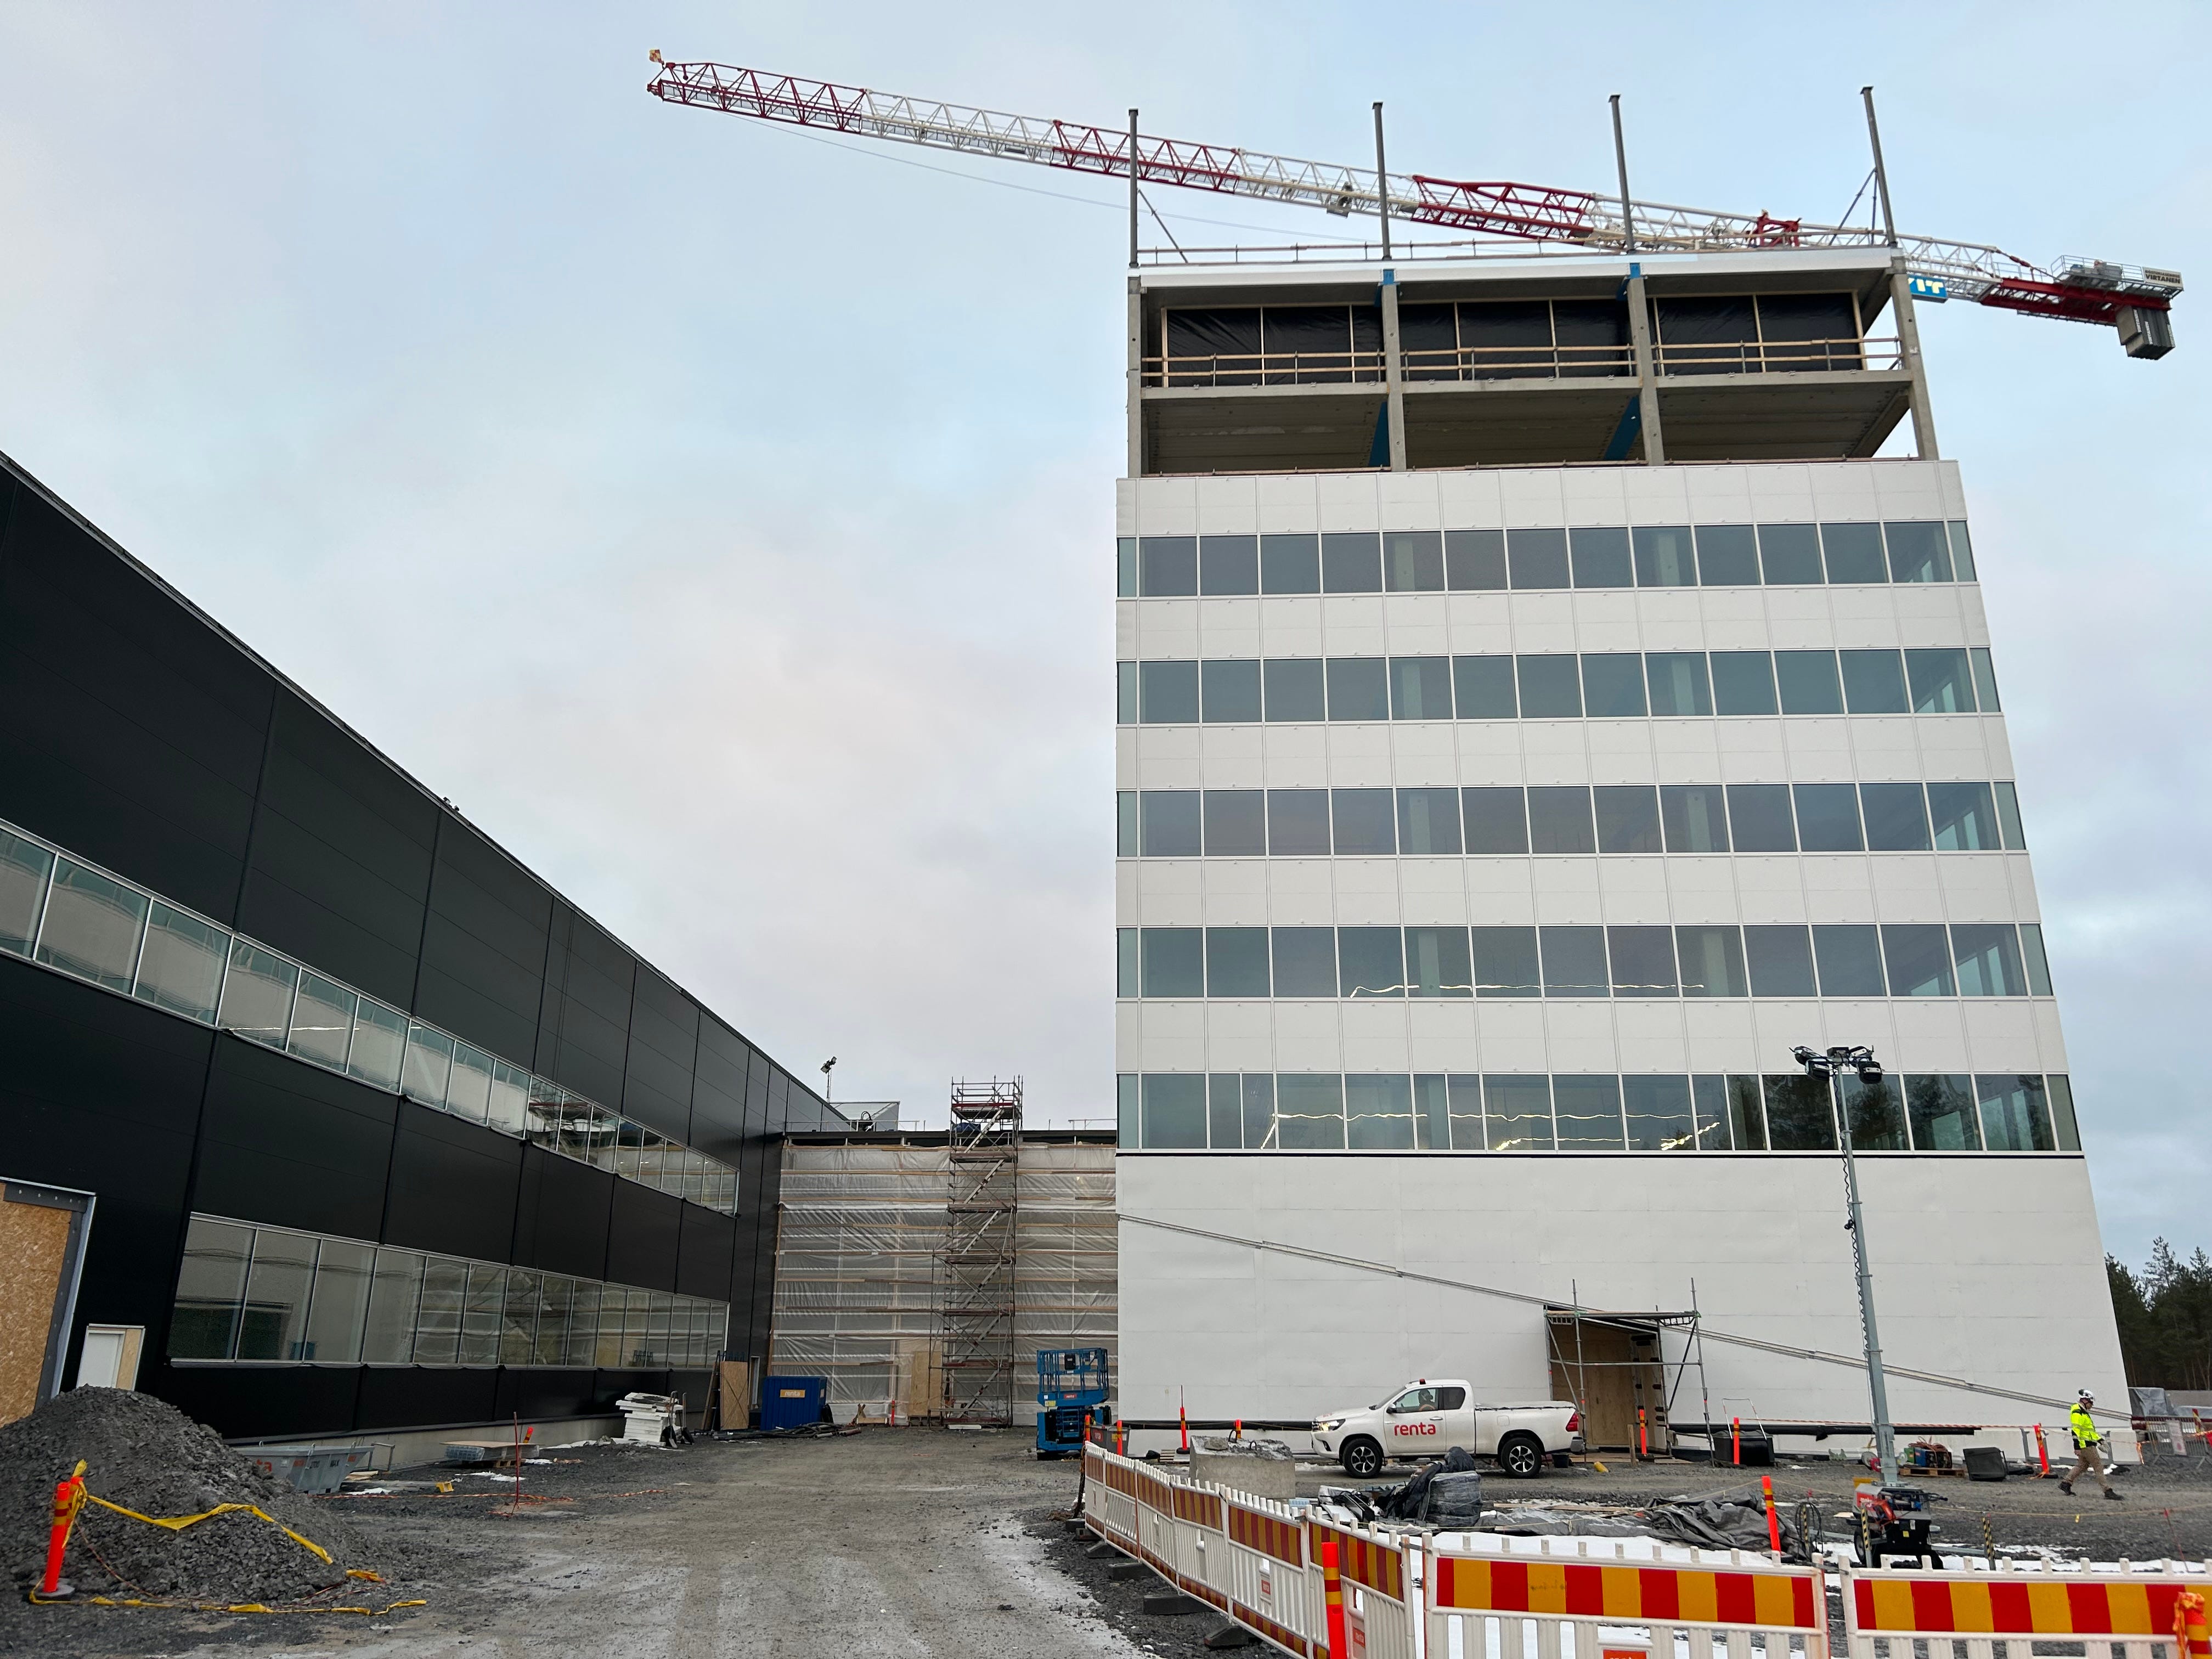 Nokia building under construction